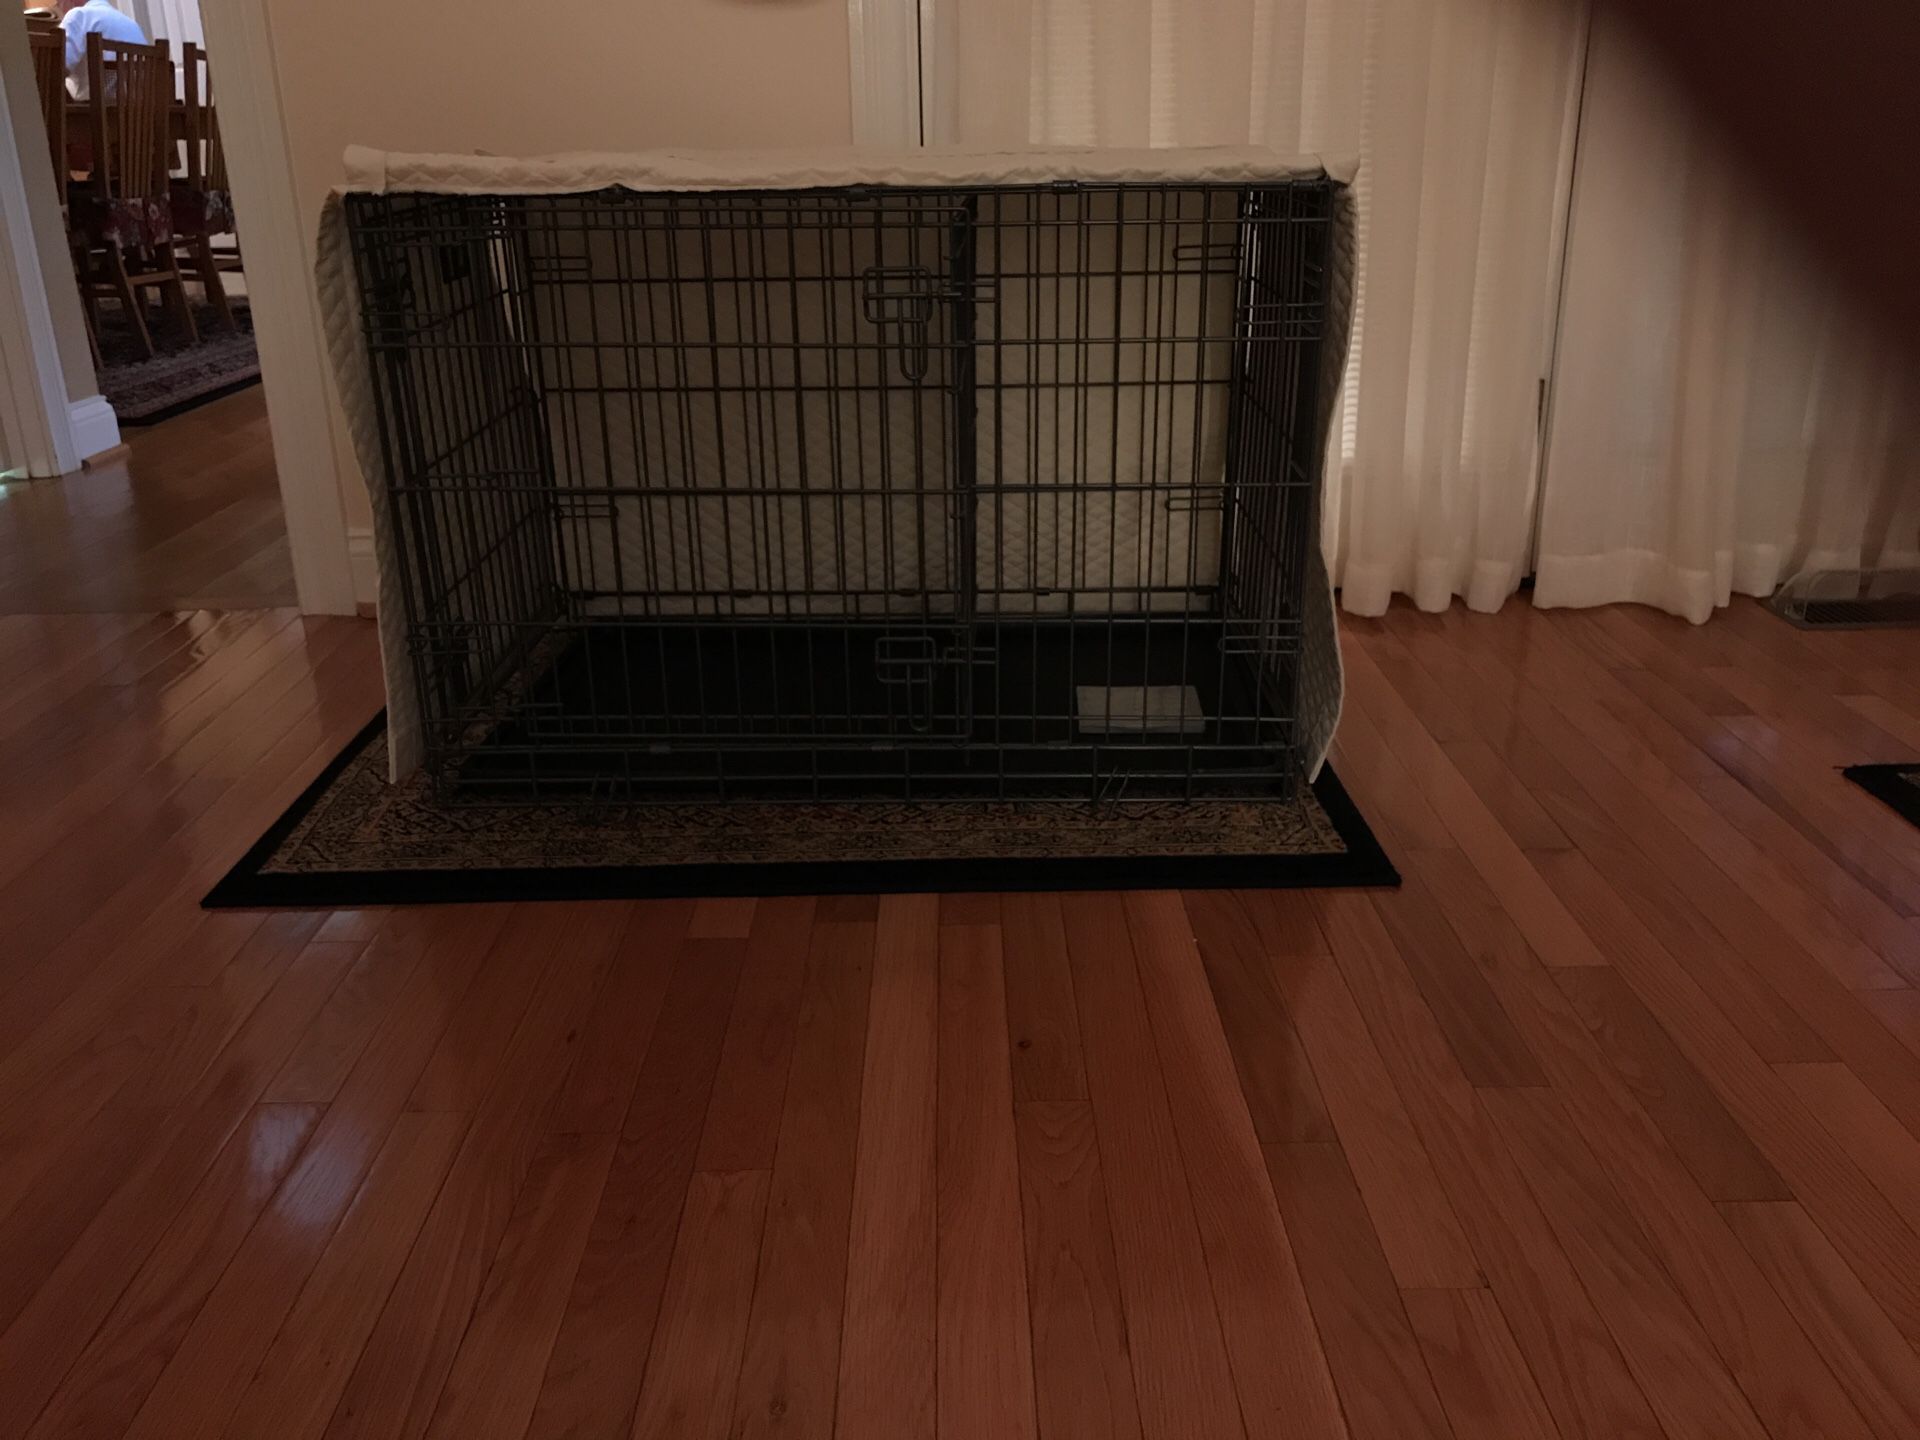 Dog crate/apartment